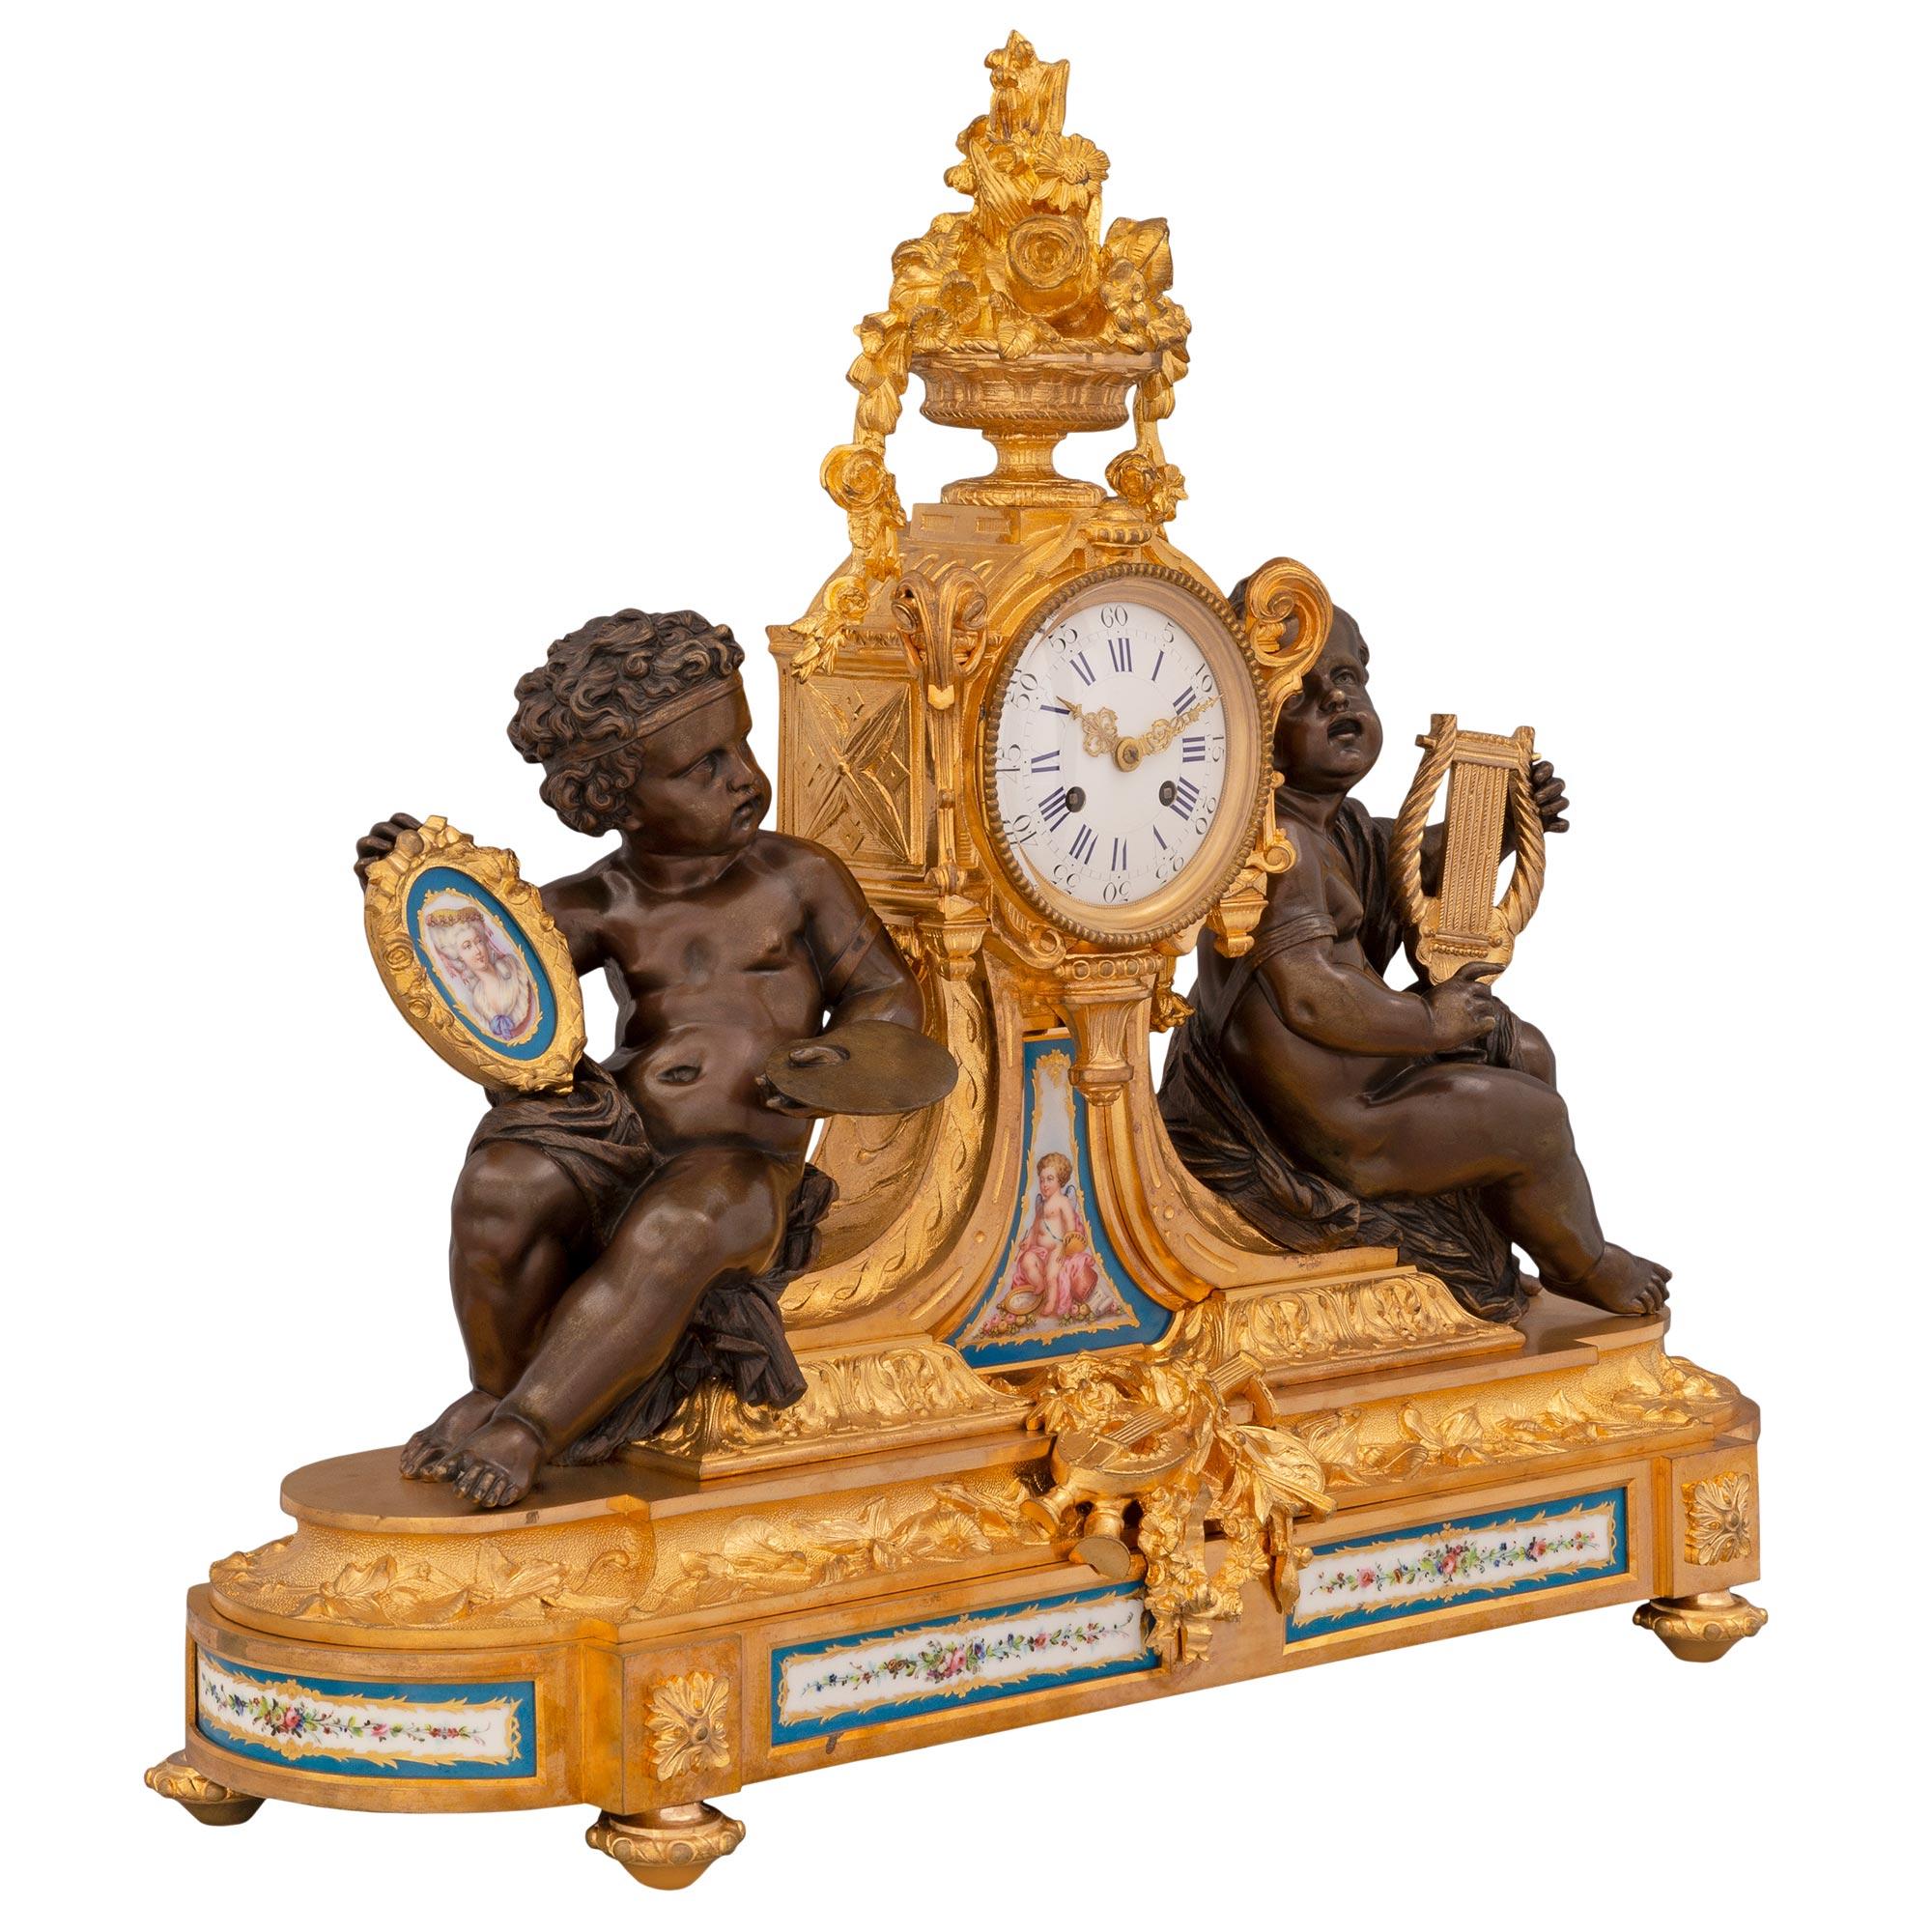 Eine prächtige französische Porzellan- und Ormolu-Uhr aus dem 19. Jahrhundert im Stil Ludwig XVI. von Sèvres. Die Uhr steht auf feinen, topfförmigen Füßen unter dem Ormolu-Sockel, der mit eleganten Blockrosetten über jedem Fuß und schönen,